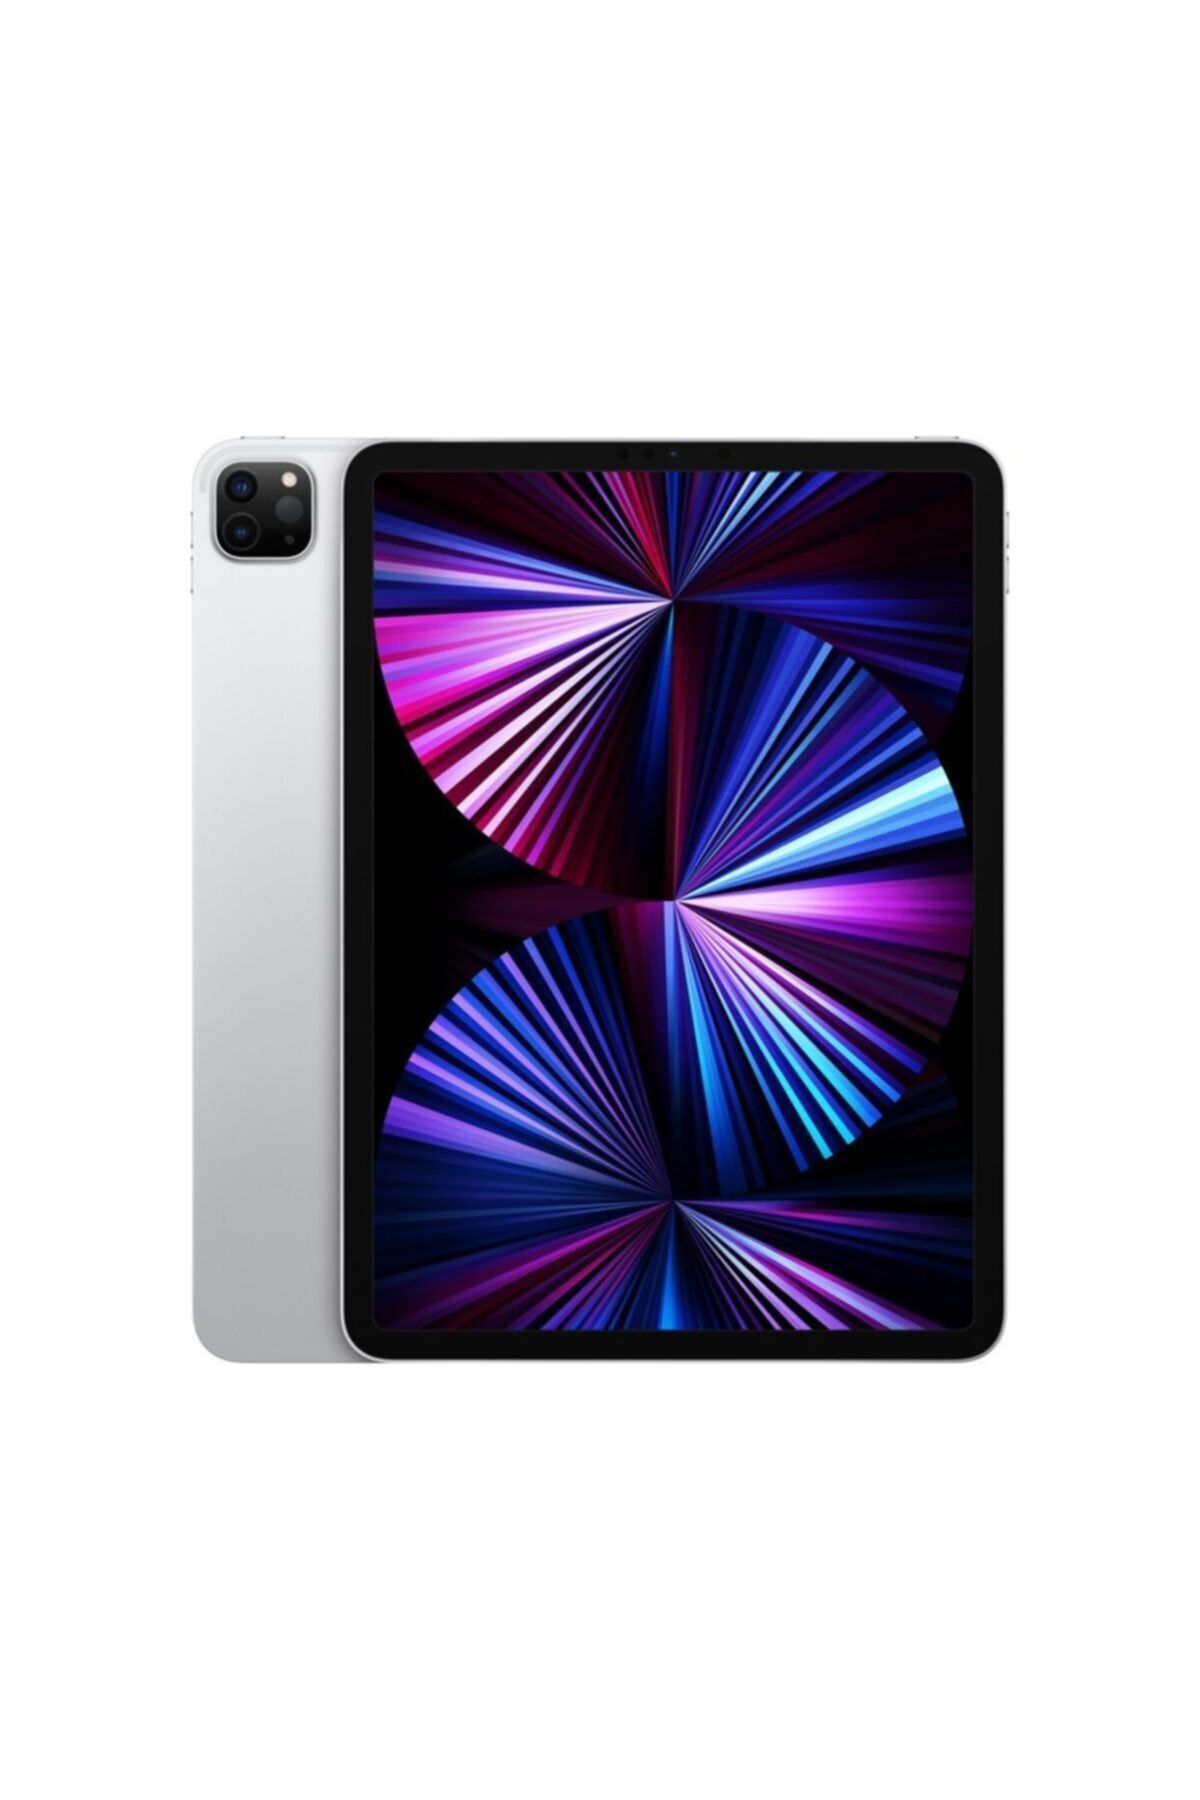 Apple Ipad Pro (3.nesil) 11 Inç Wi-fi 1tb Mhr03tu/a - Gümüş